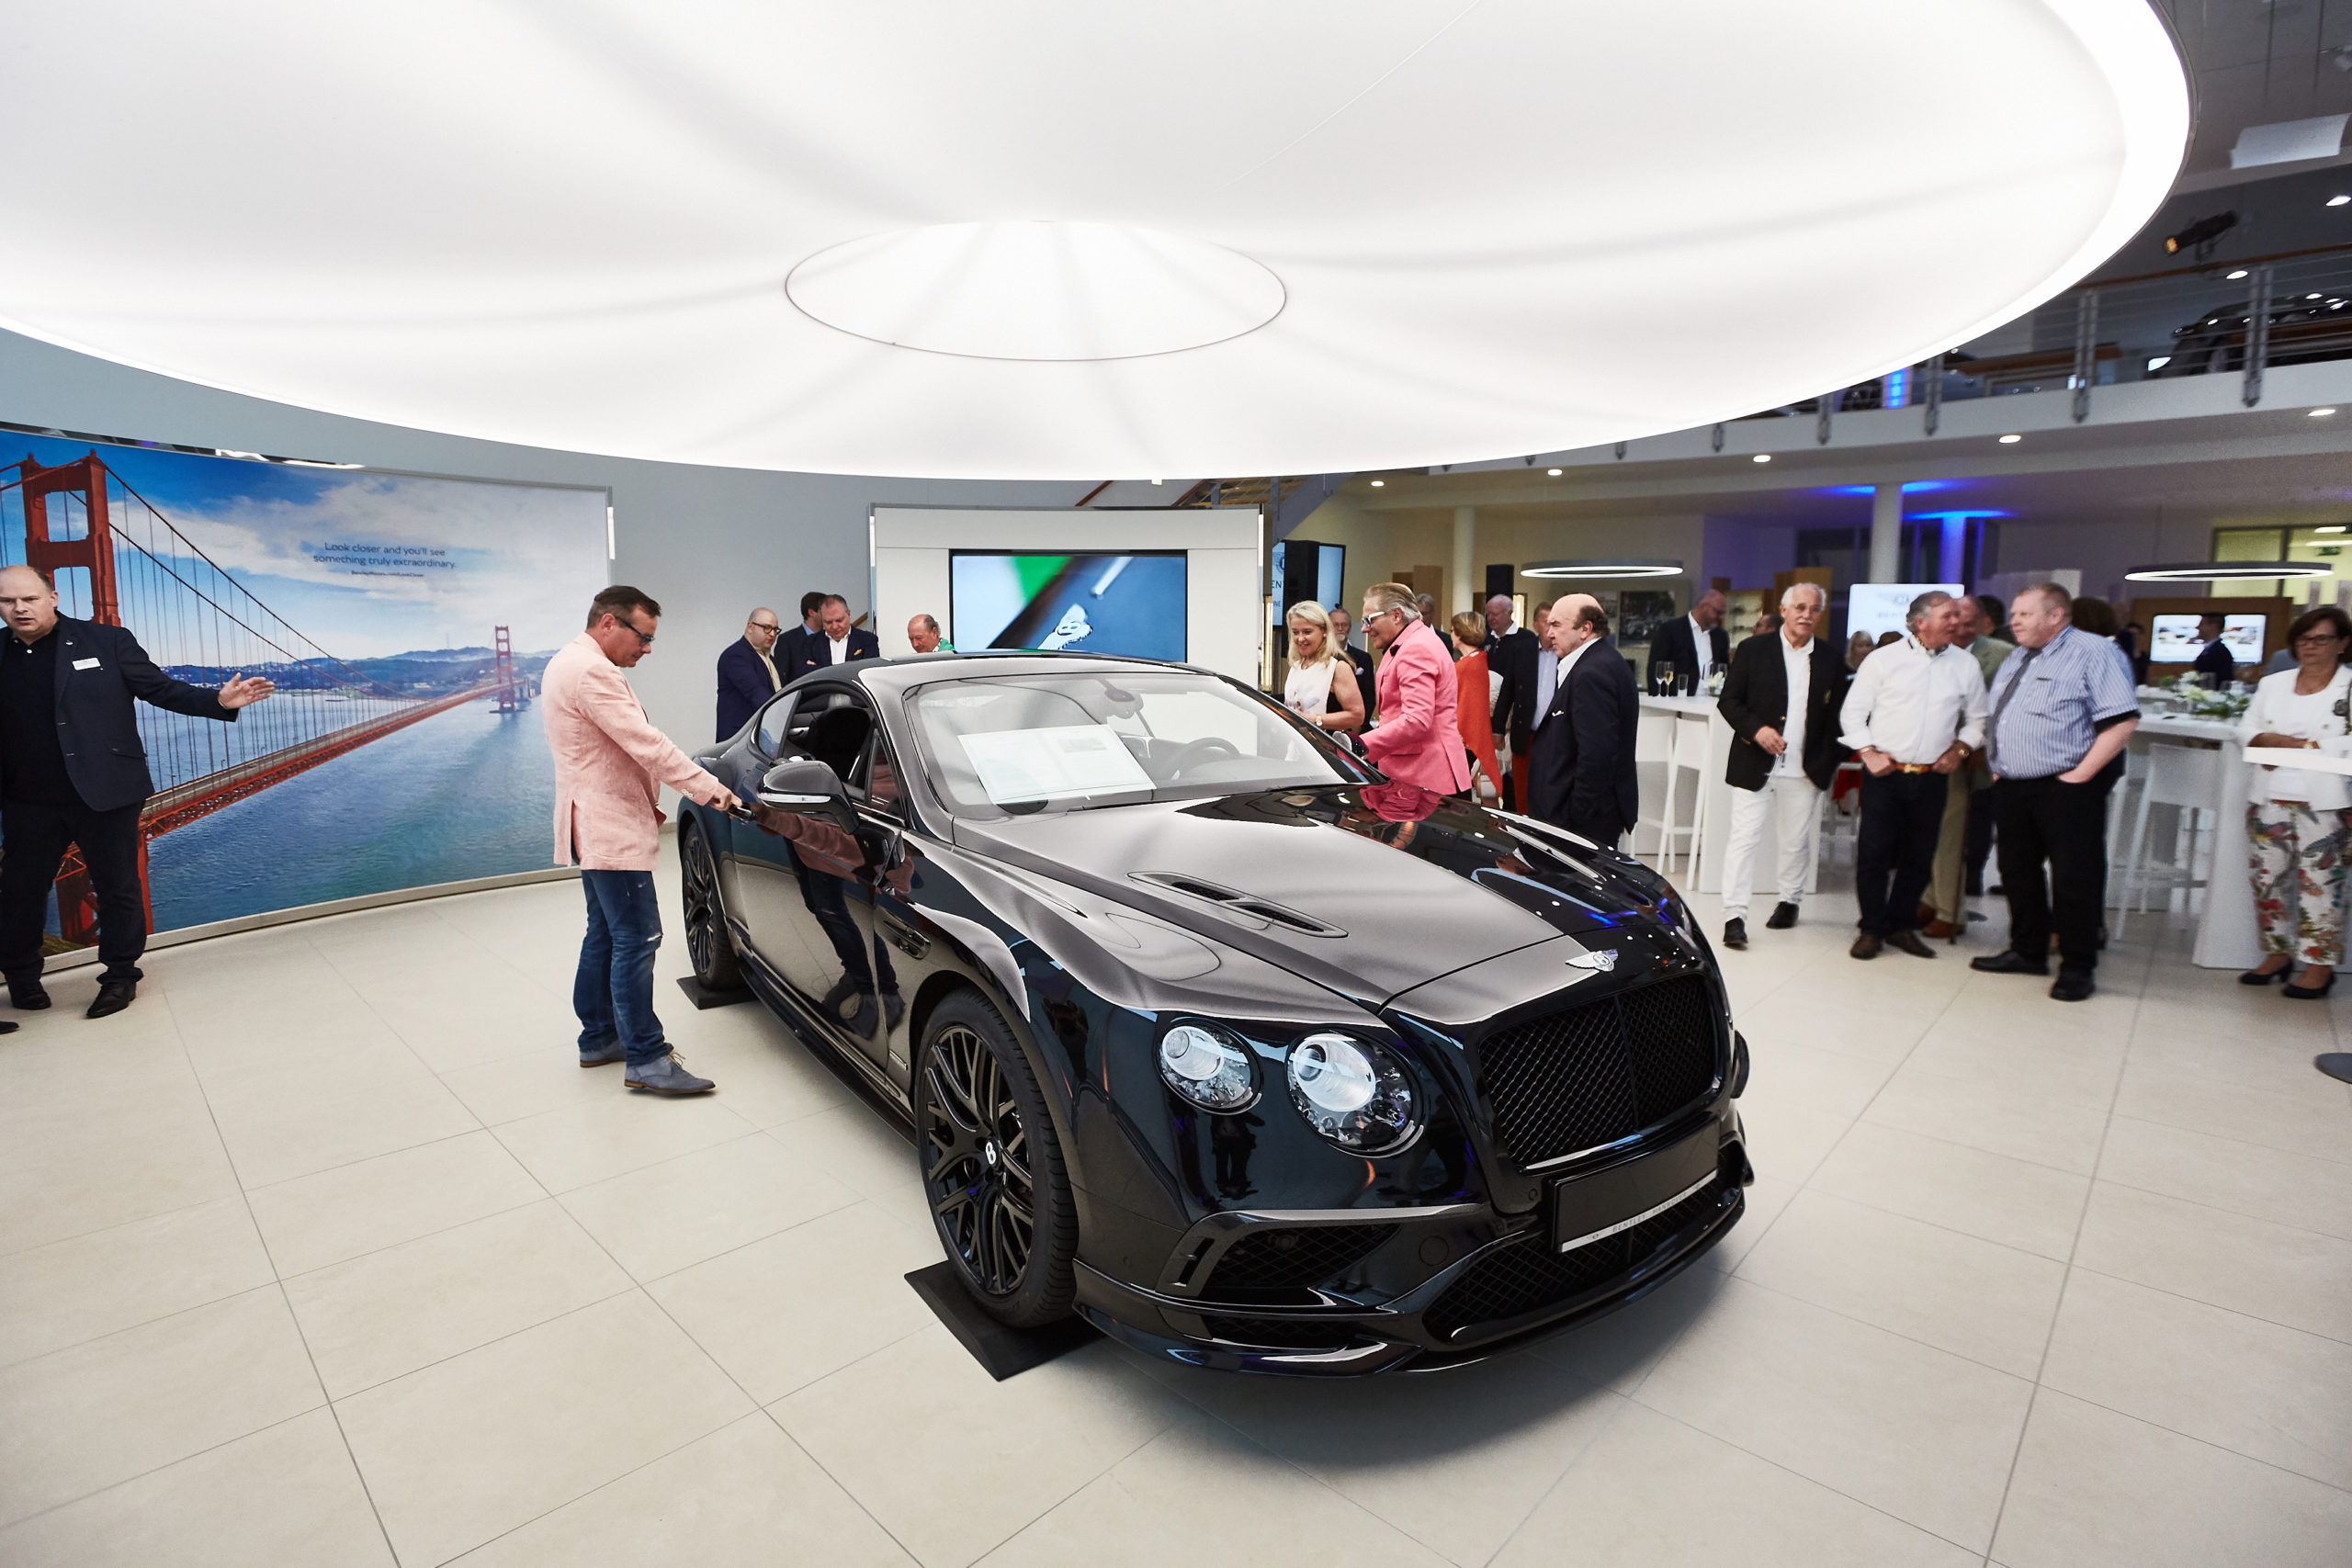 Schwarzer Rolls-Royce wird auf Event präsentiert